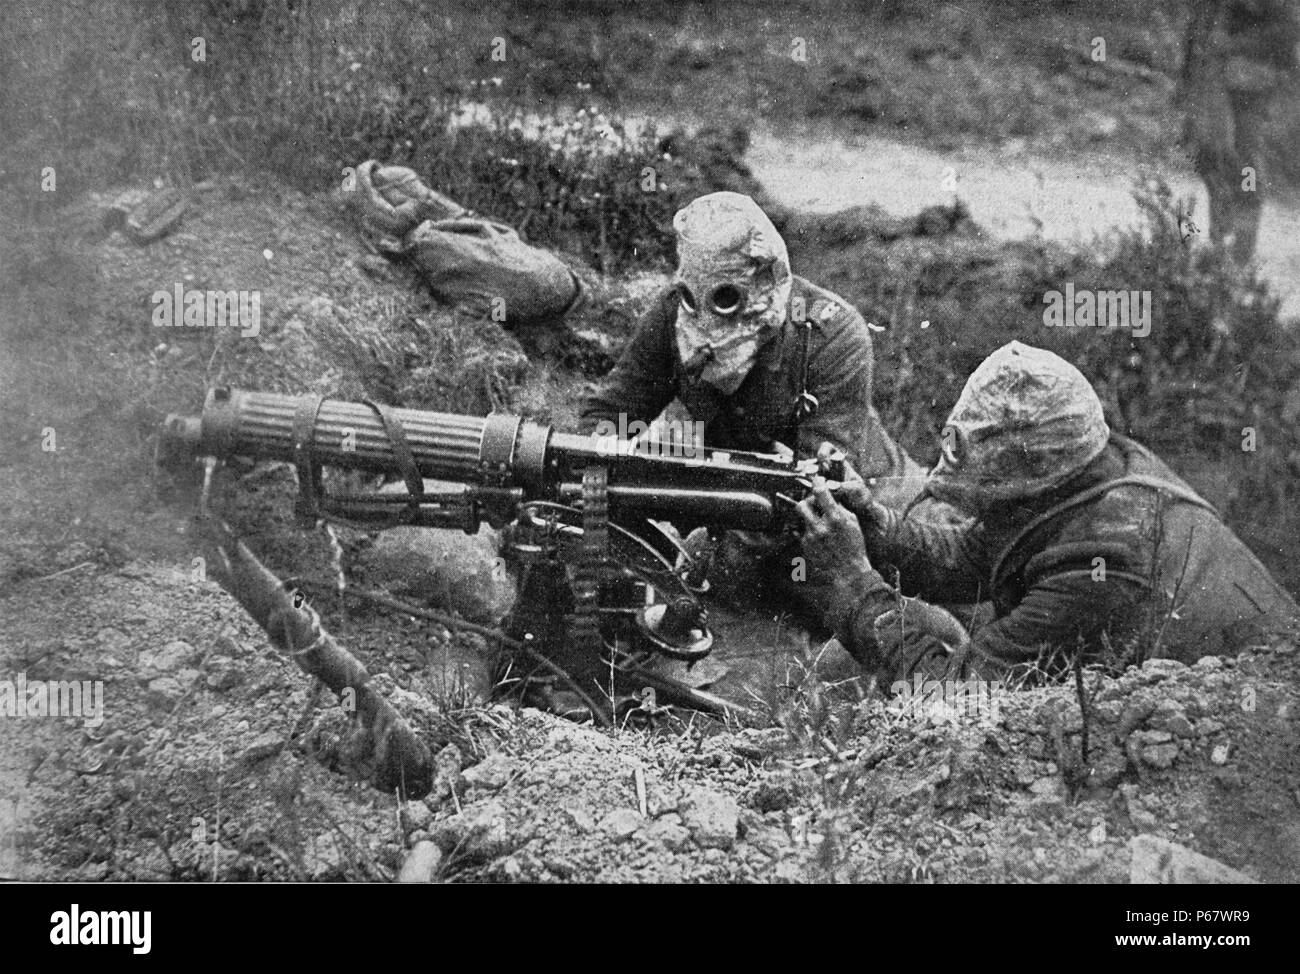 Luglio 1916, Ovillers, Battaglia delle Somme, la prima guerra mondiale. British gunners scopo una macchina Vickers gunThey indossare i caschi di protezione contro attacchi di gas Foto Stock